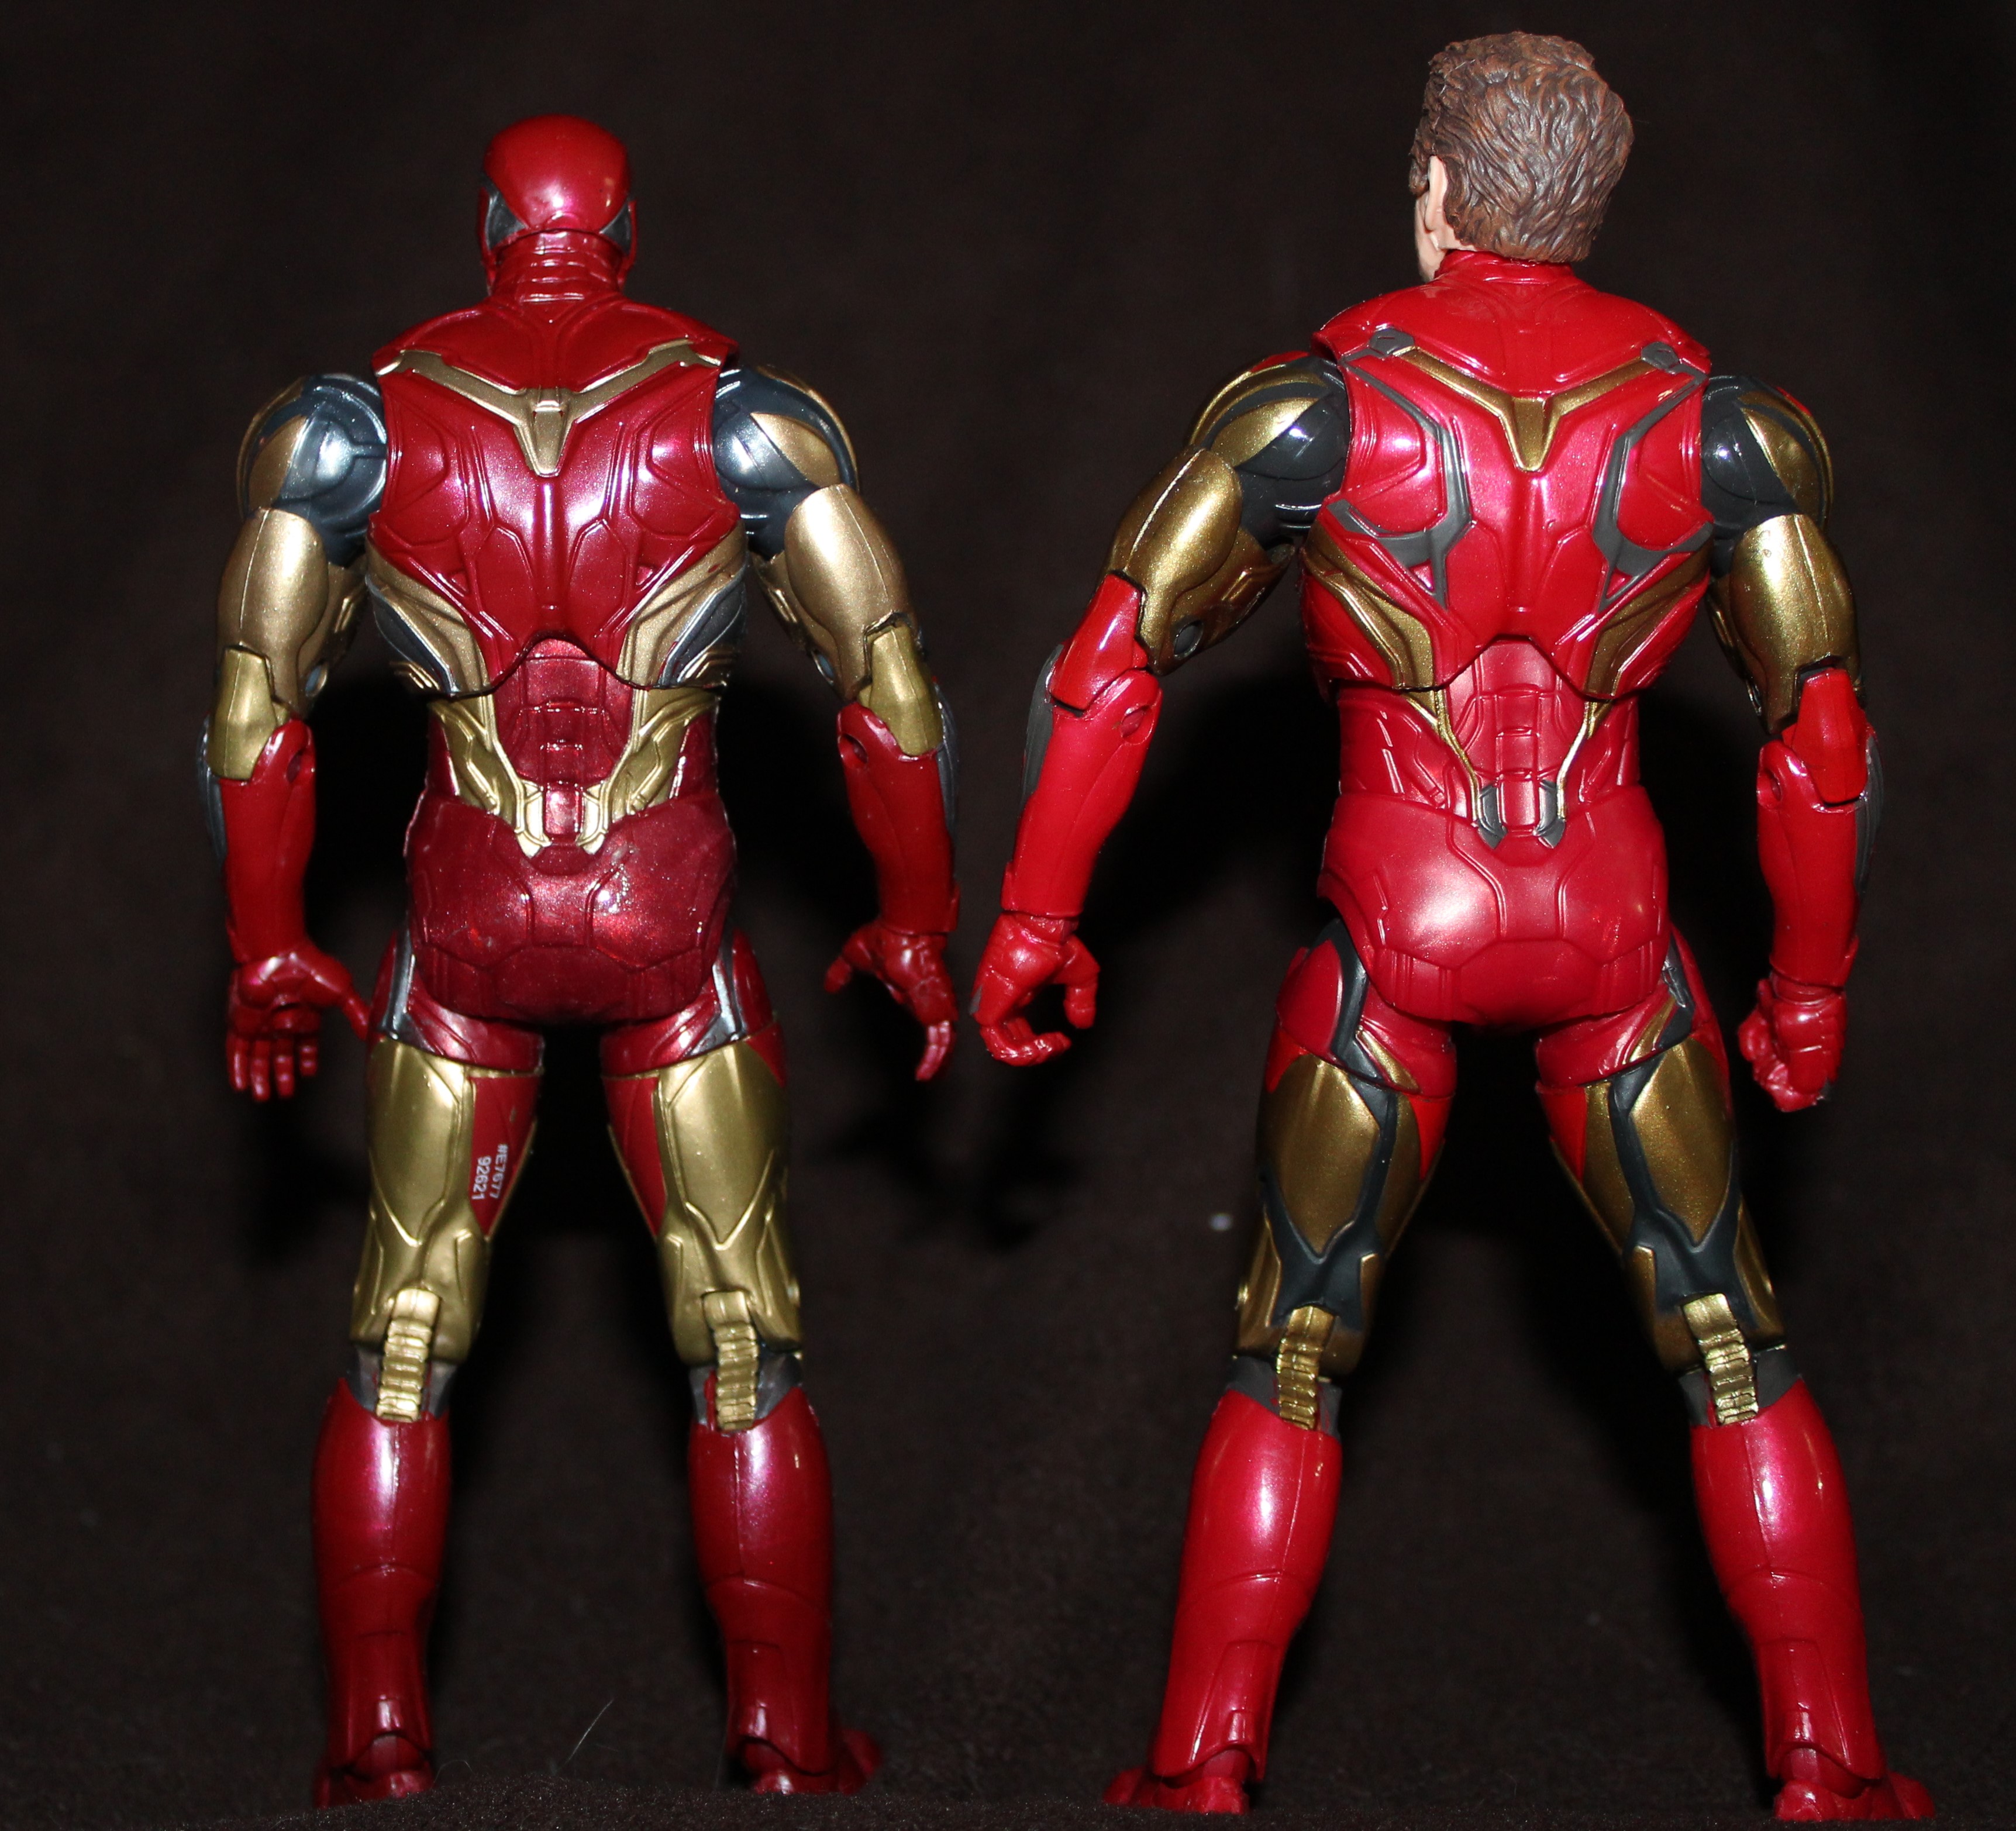 Iron Man rears